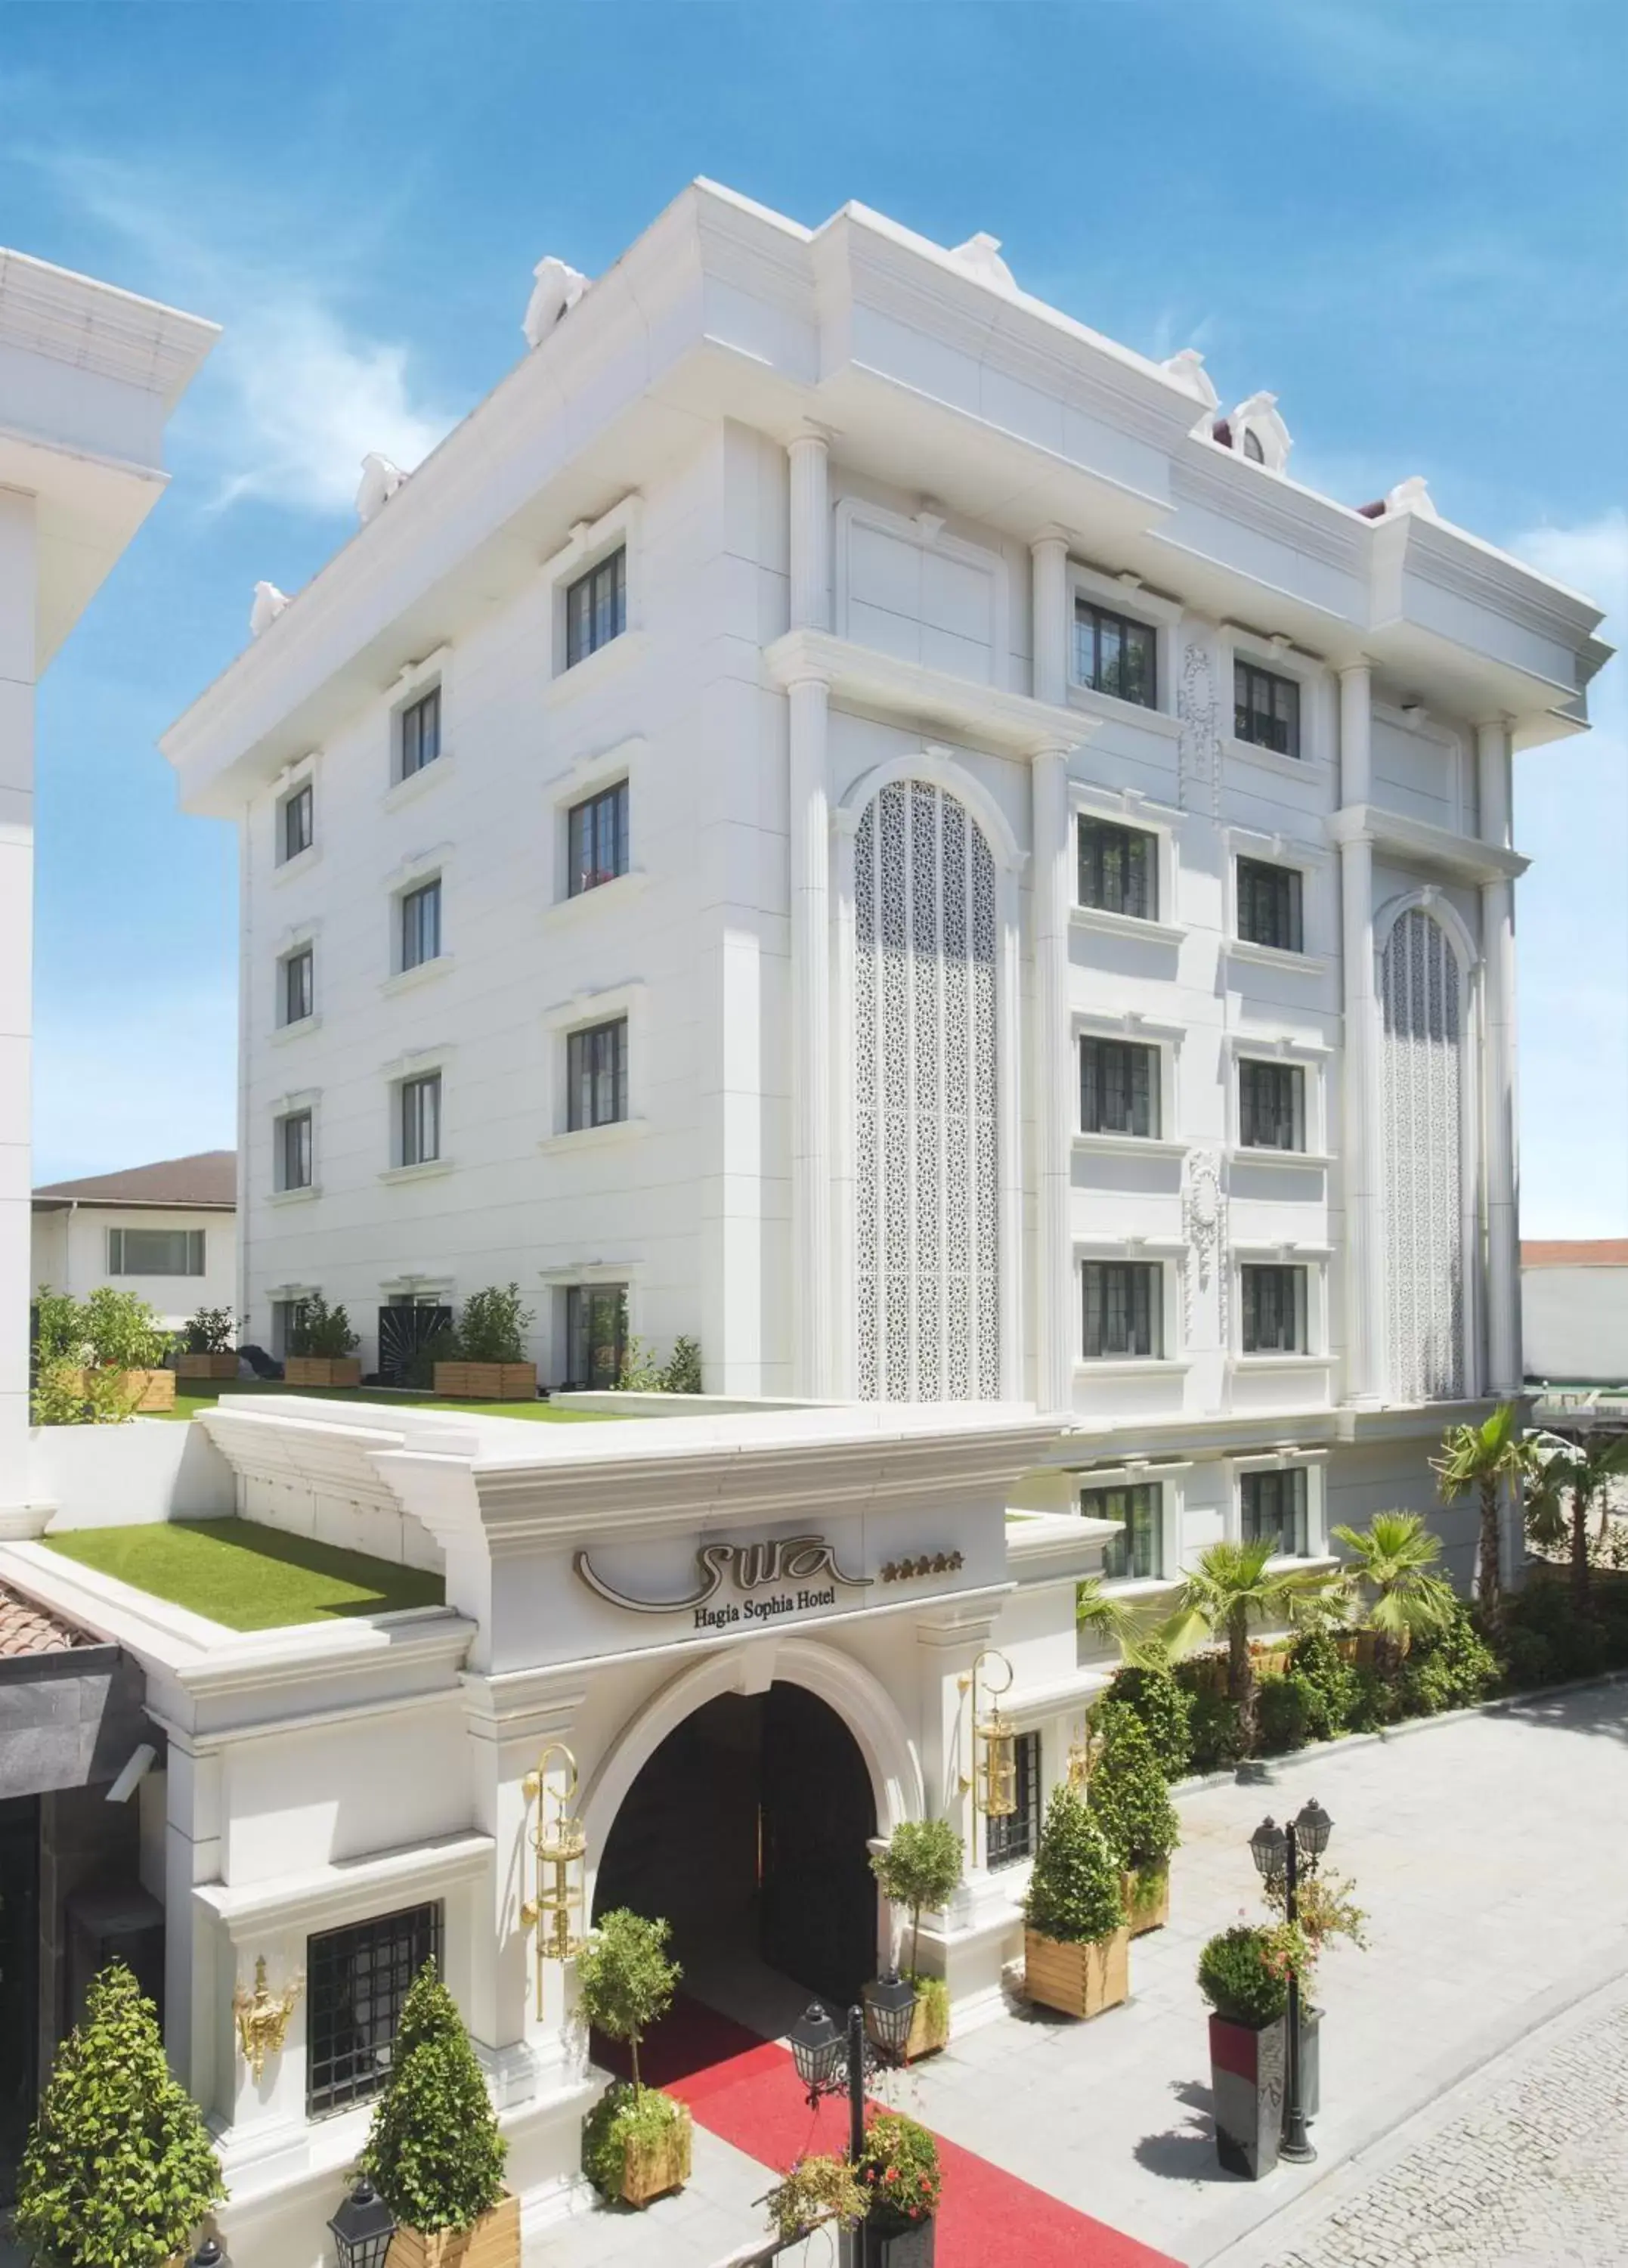 Facade/entrance, Property Building in Sura Hagia Sophia Hotel